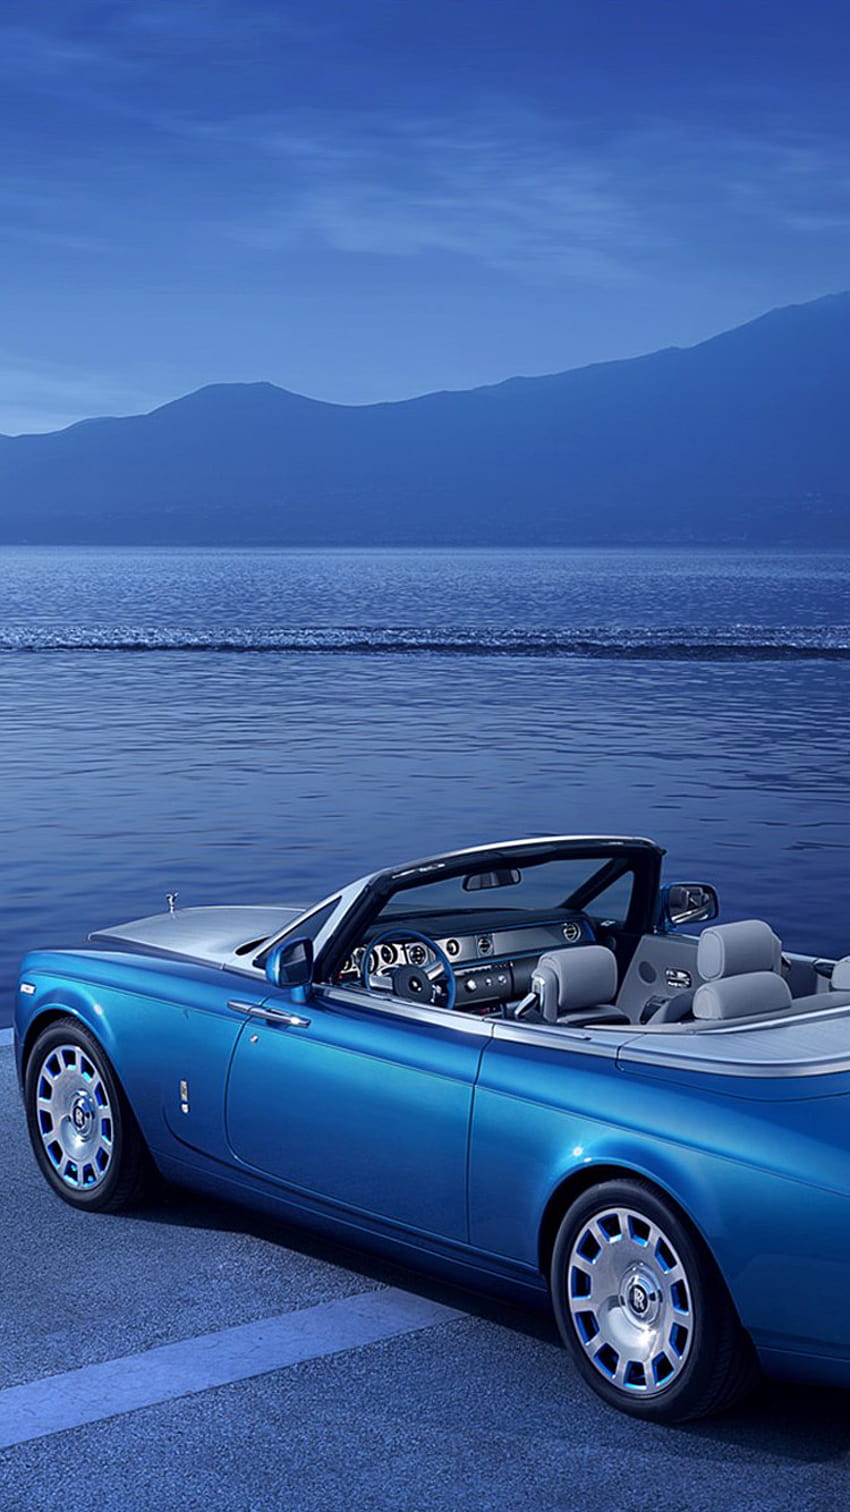 1334x750,kendaraan darat,kendaraan,mobil,kendaraan mewah,biru,mobil mewah pribadi,desain otomotif,mobil sport,rolls royce phantom drophead coupé,sedan wallpaper ponsel HD